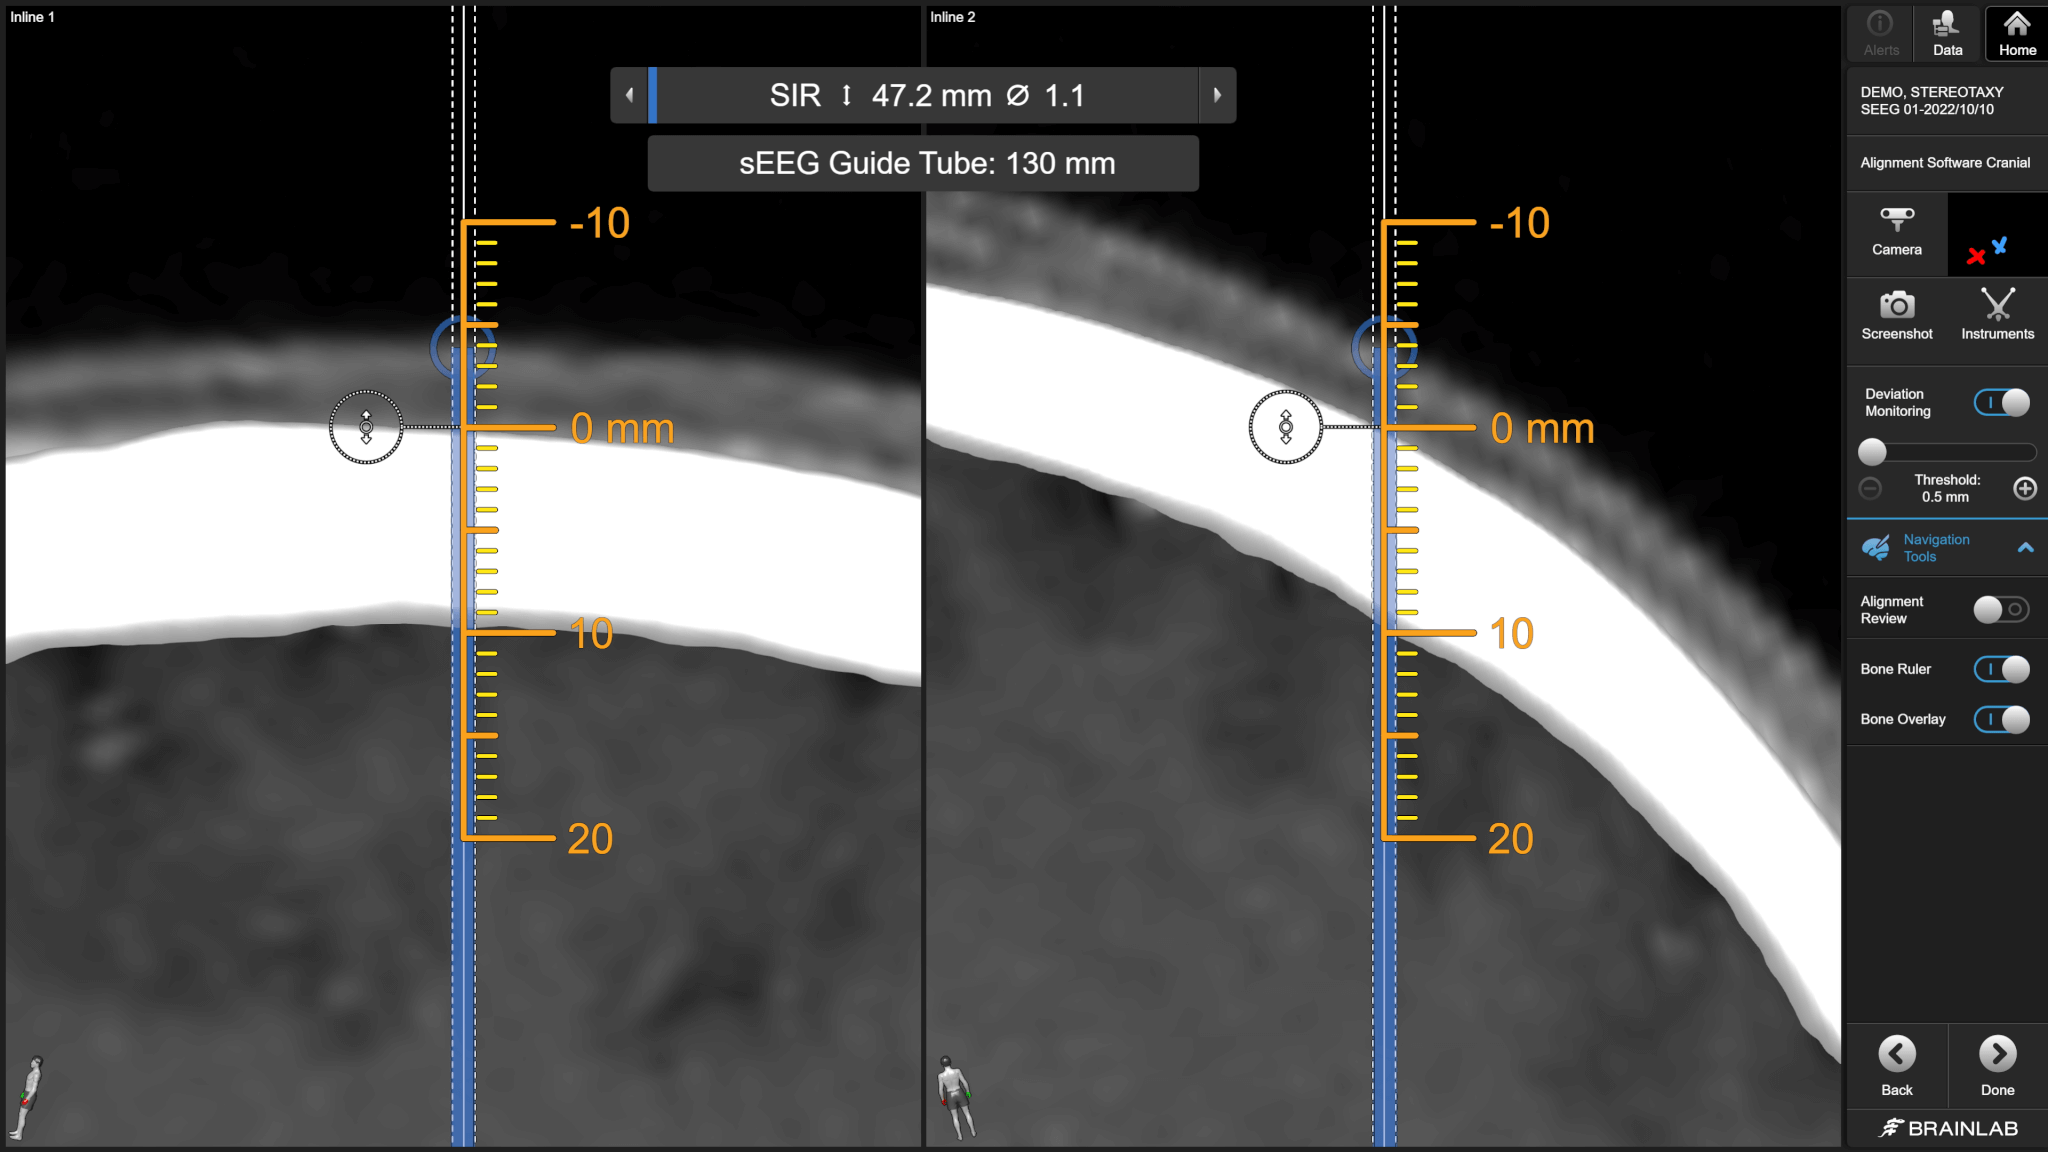 Capture d’écran du logiciel Elements Curvature Correction après fusion des images TDM et IRM pour corriger les différences de position du rachis en cours d’imagerie.